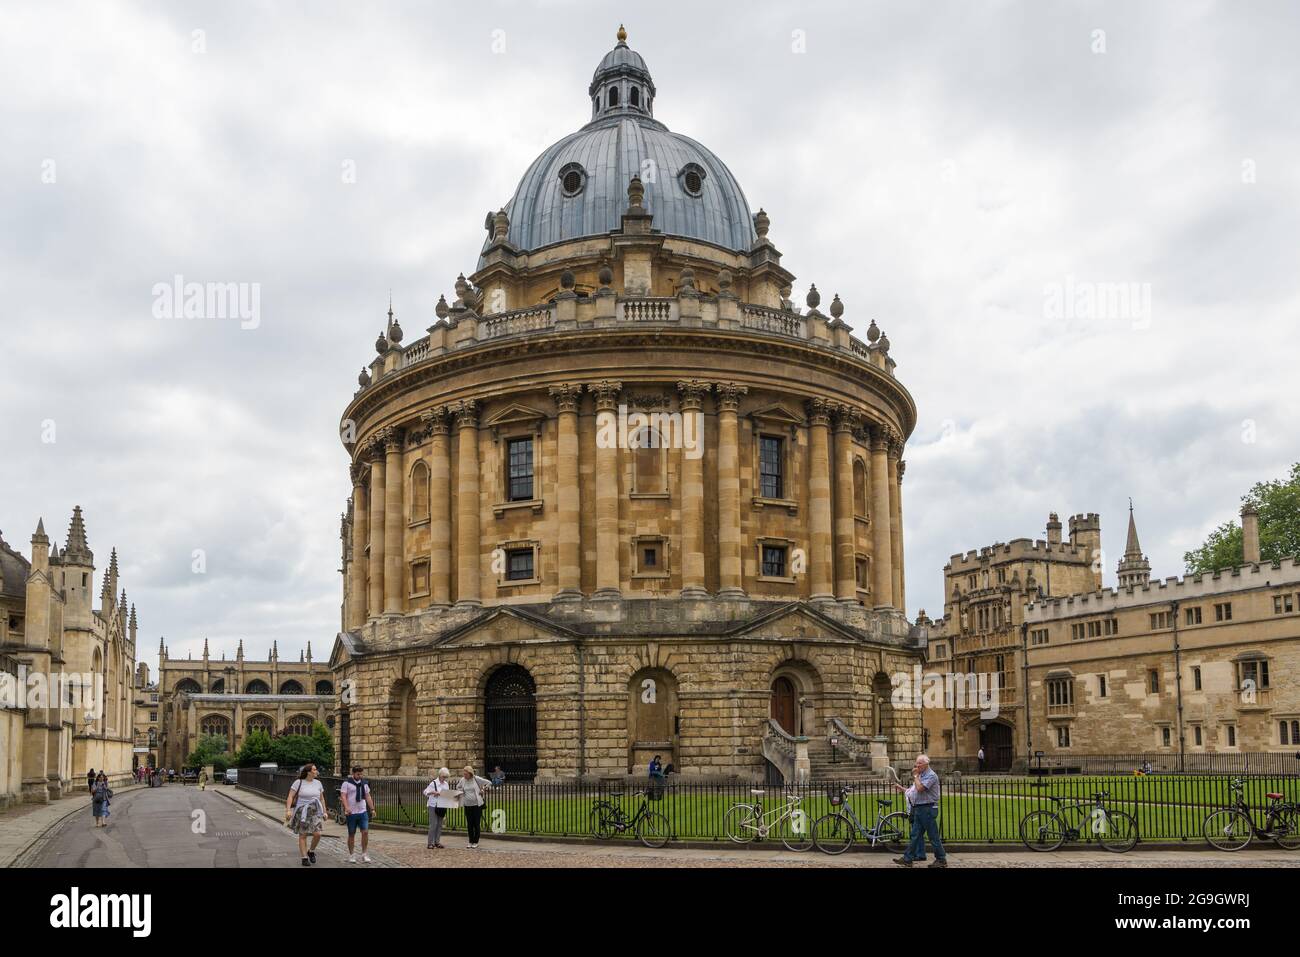 La caméra Radcliffe, qui abrite la bibliothèque scientifique Radcliffe. Oxford, Angleterre, Royaume-Uni Banque D'Images